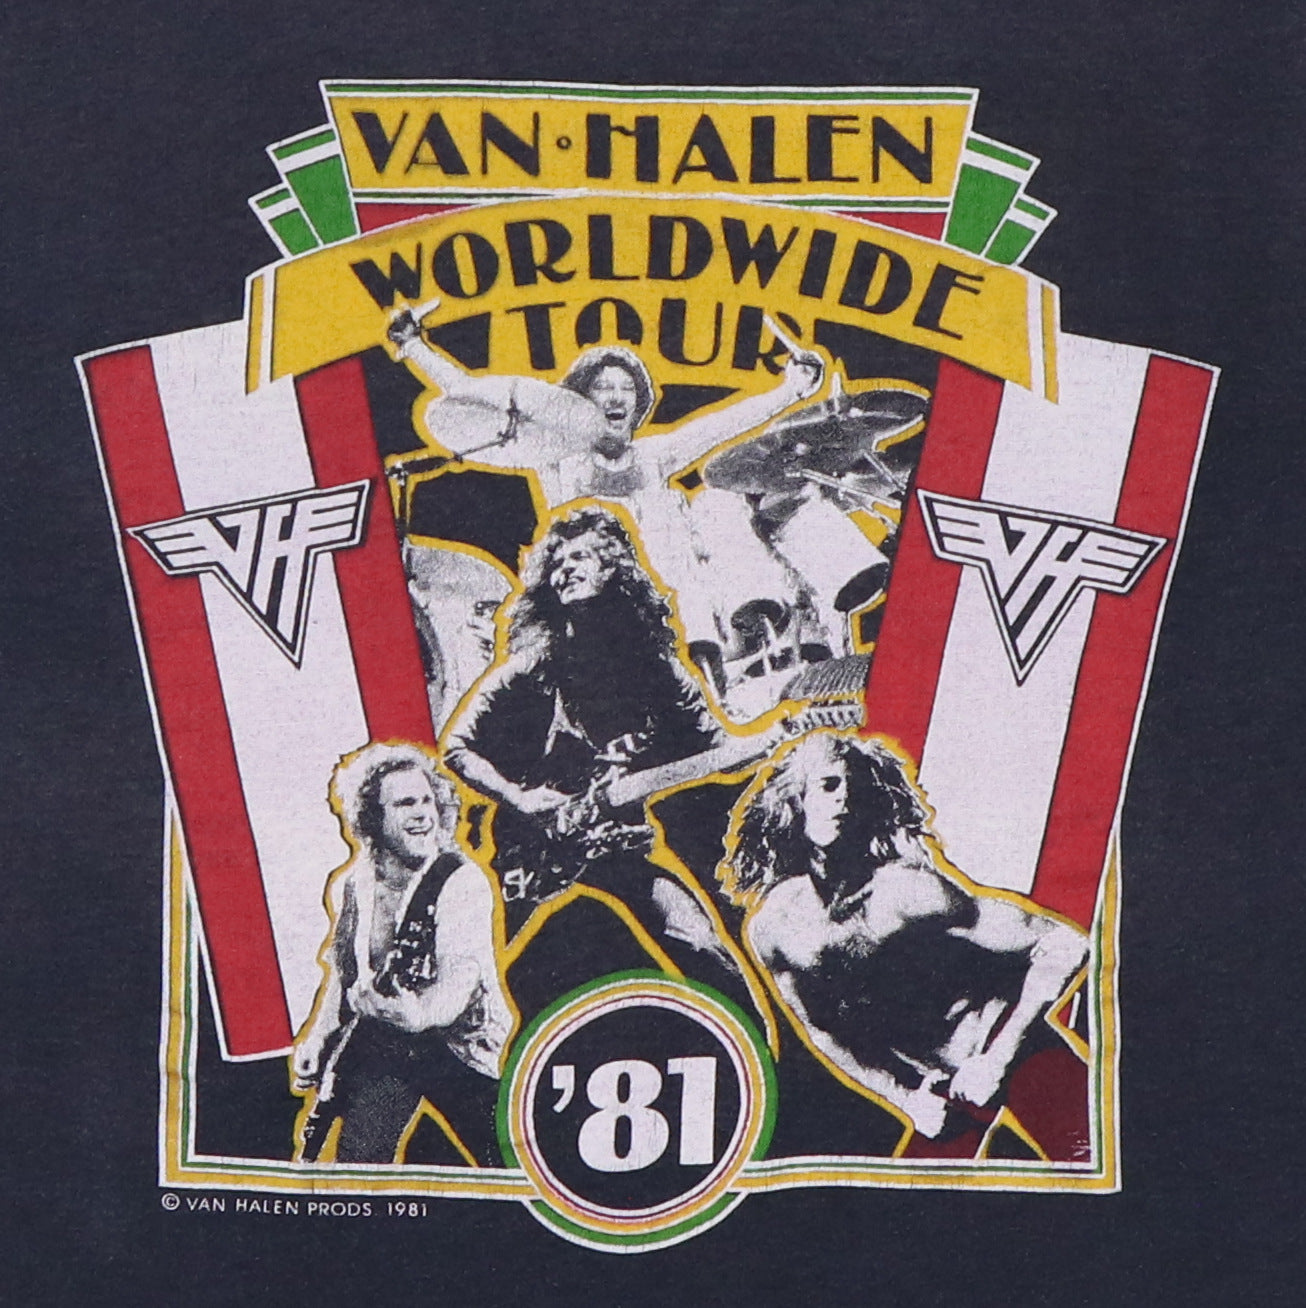 1981 Van Halen Worldwide Tour Shirt